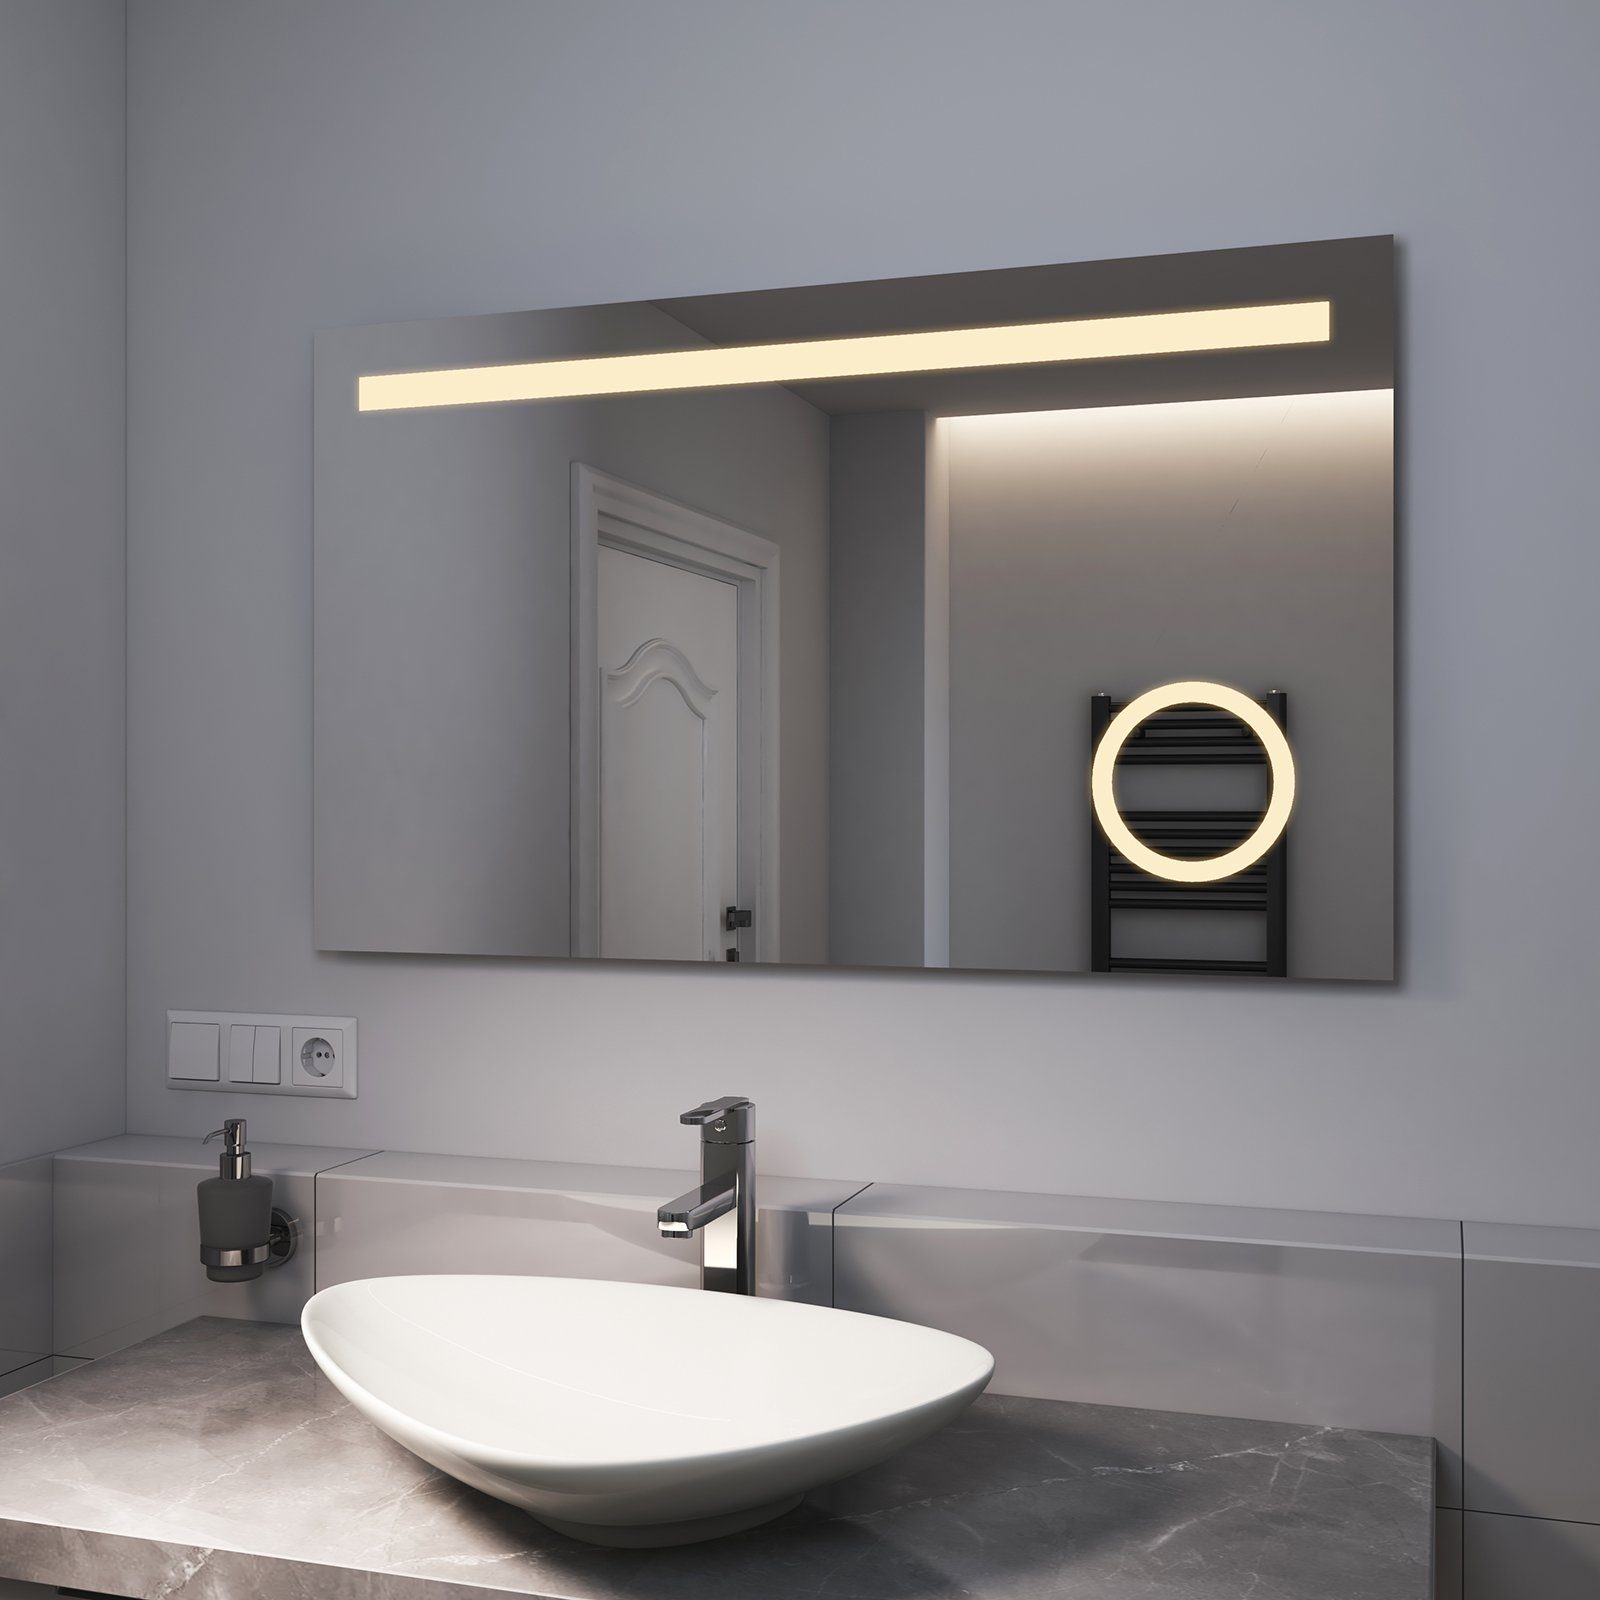 EMKE Badspiegel EMKE LED Badspiegel mit Beleuchtung, LED Wandspiegel, mit Taste und Beschlagfrei, 2 Lichtfarbe Warmweiß/Kaltweiß | Badspiegel